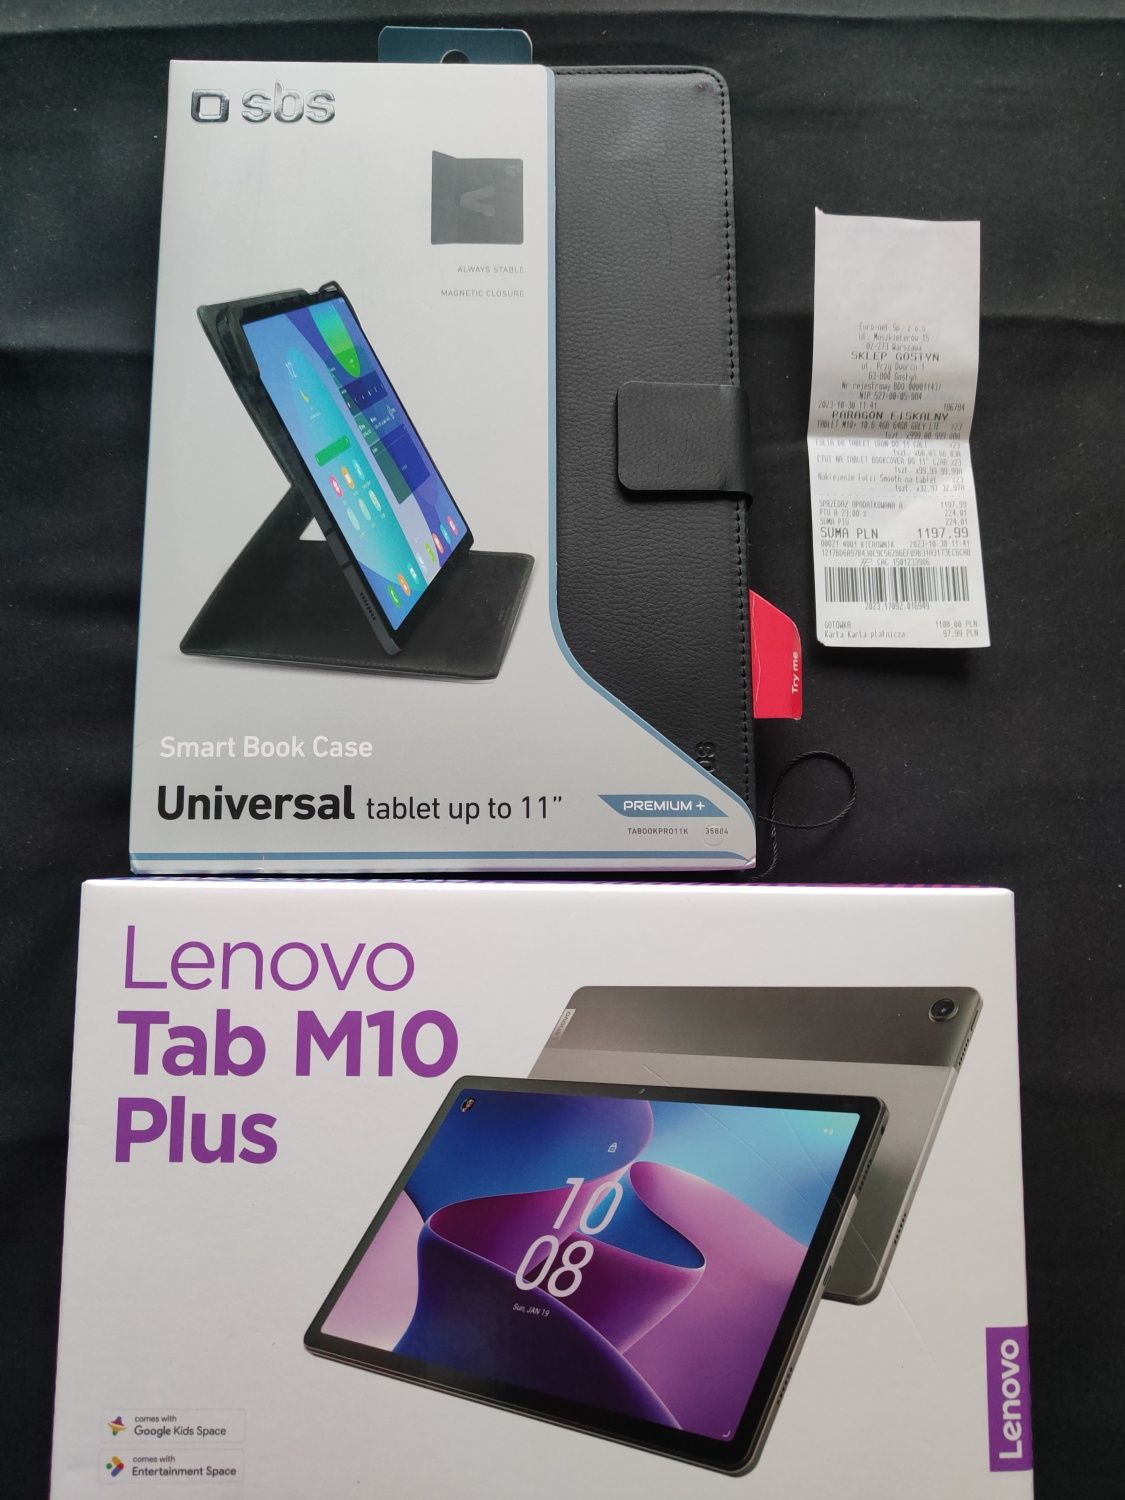 Nowy Lenovo Tab M10 Plus 3rd Gen Moto Tab g62 tablet gwarancja